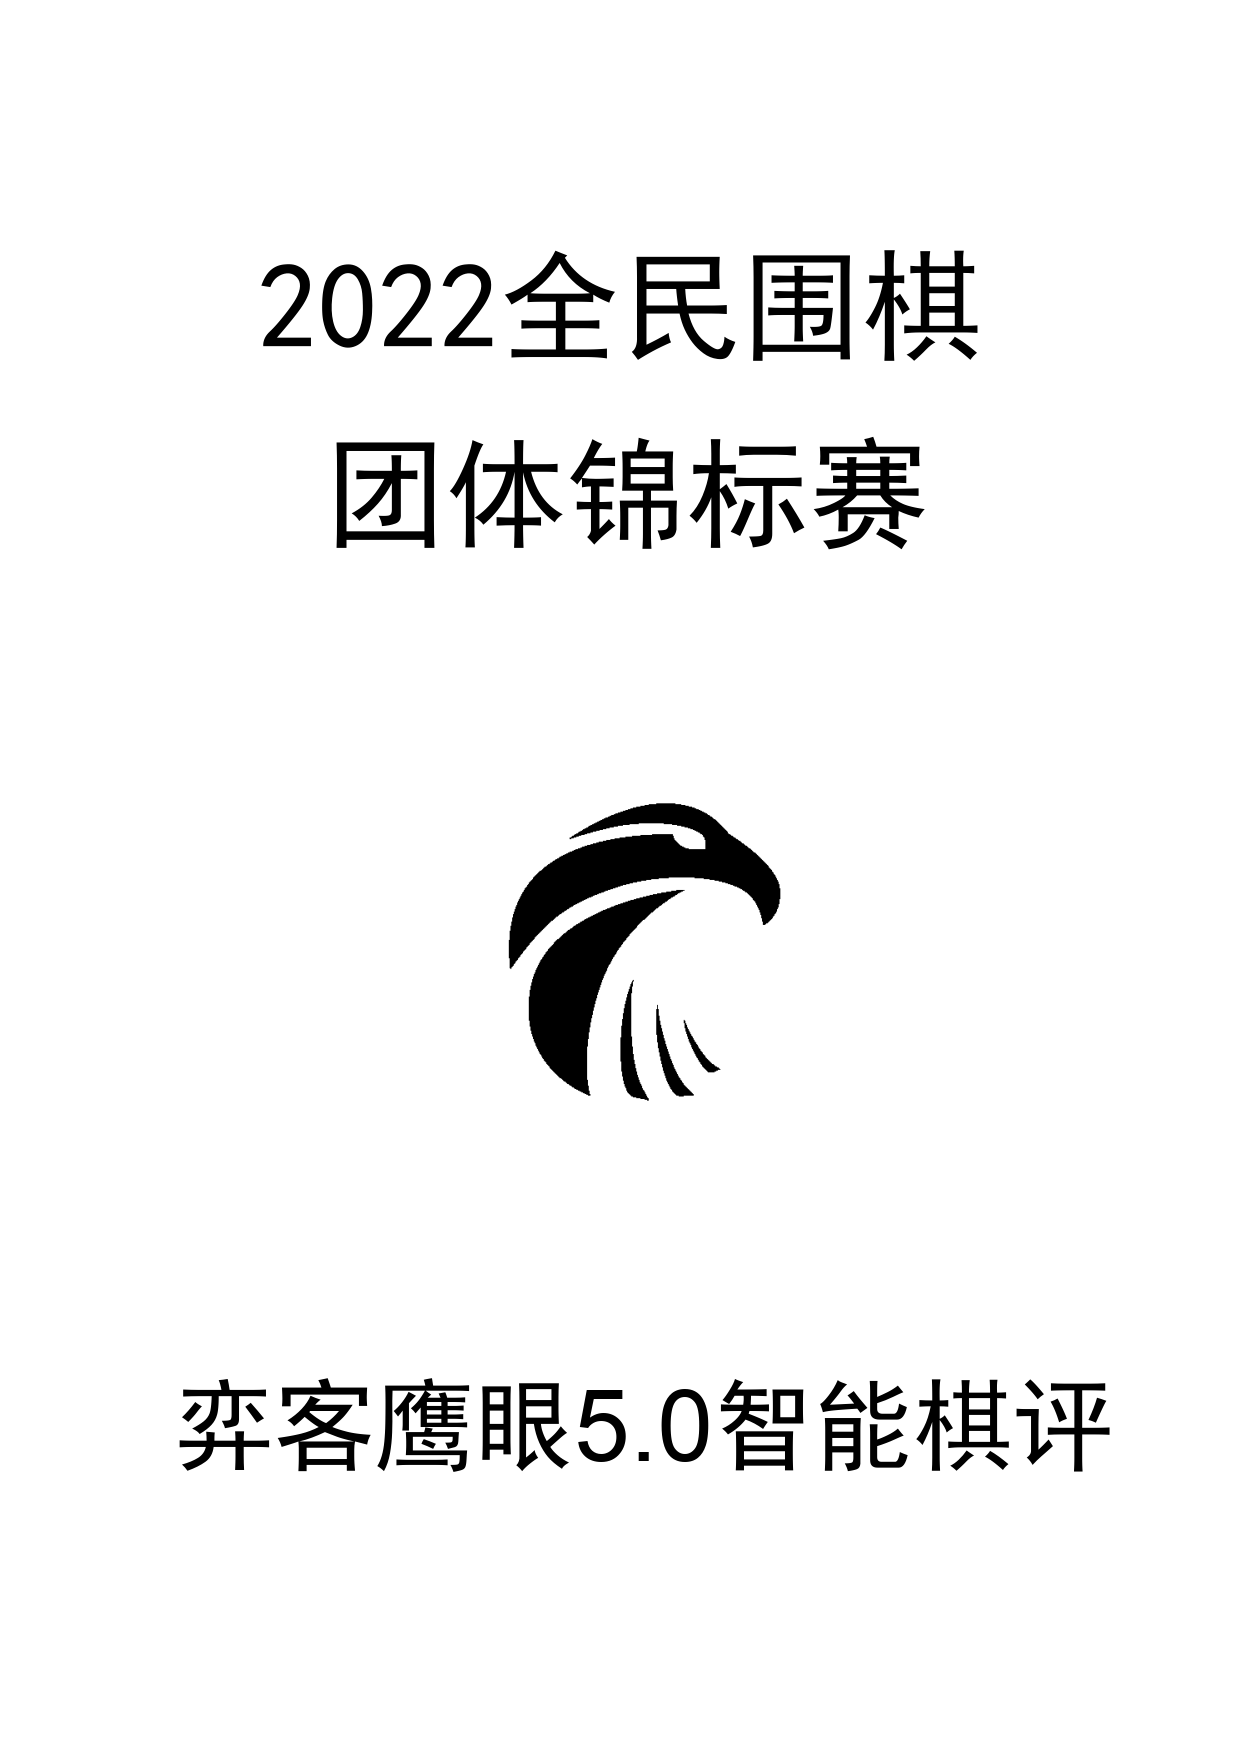 2022全民团体锦标赛0_1.png